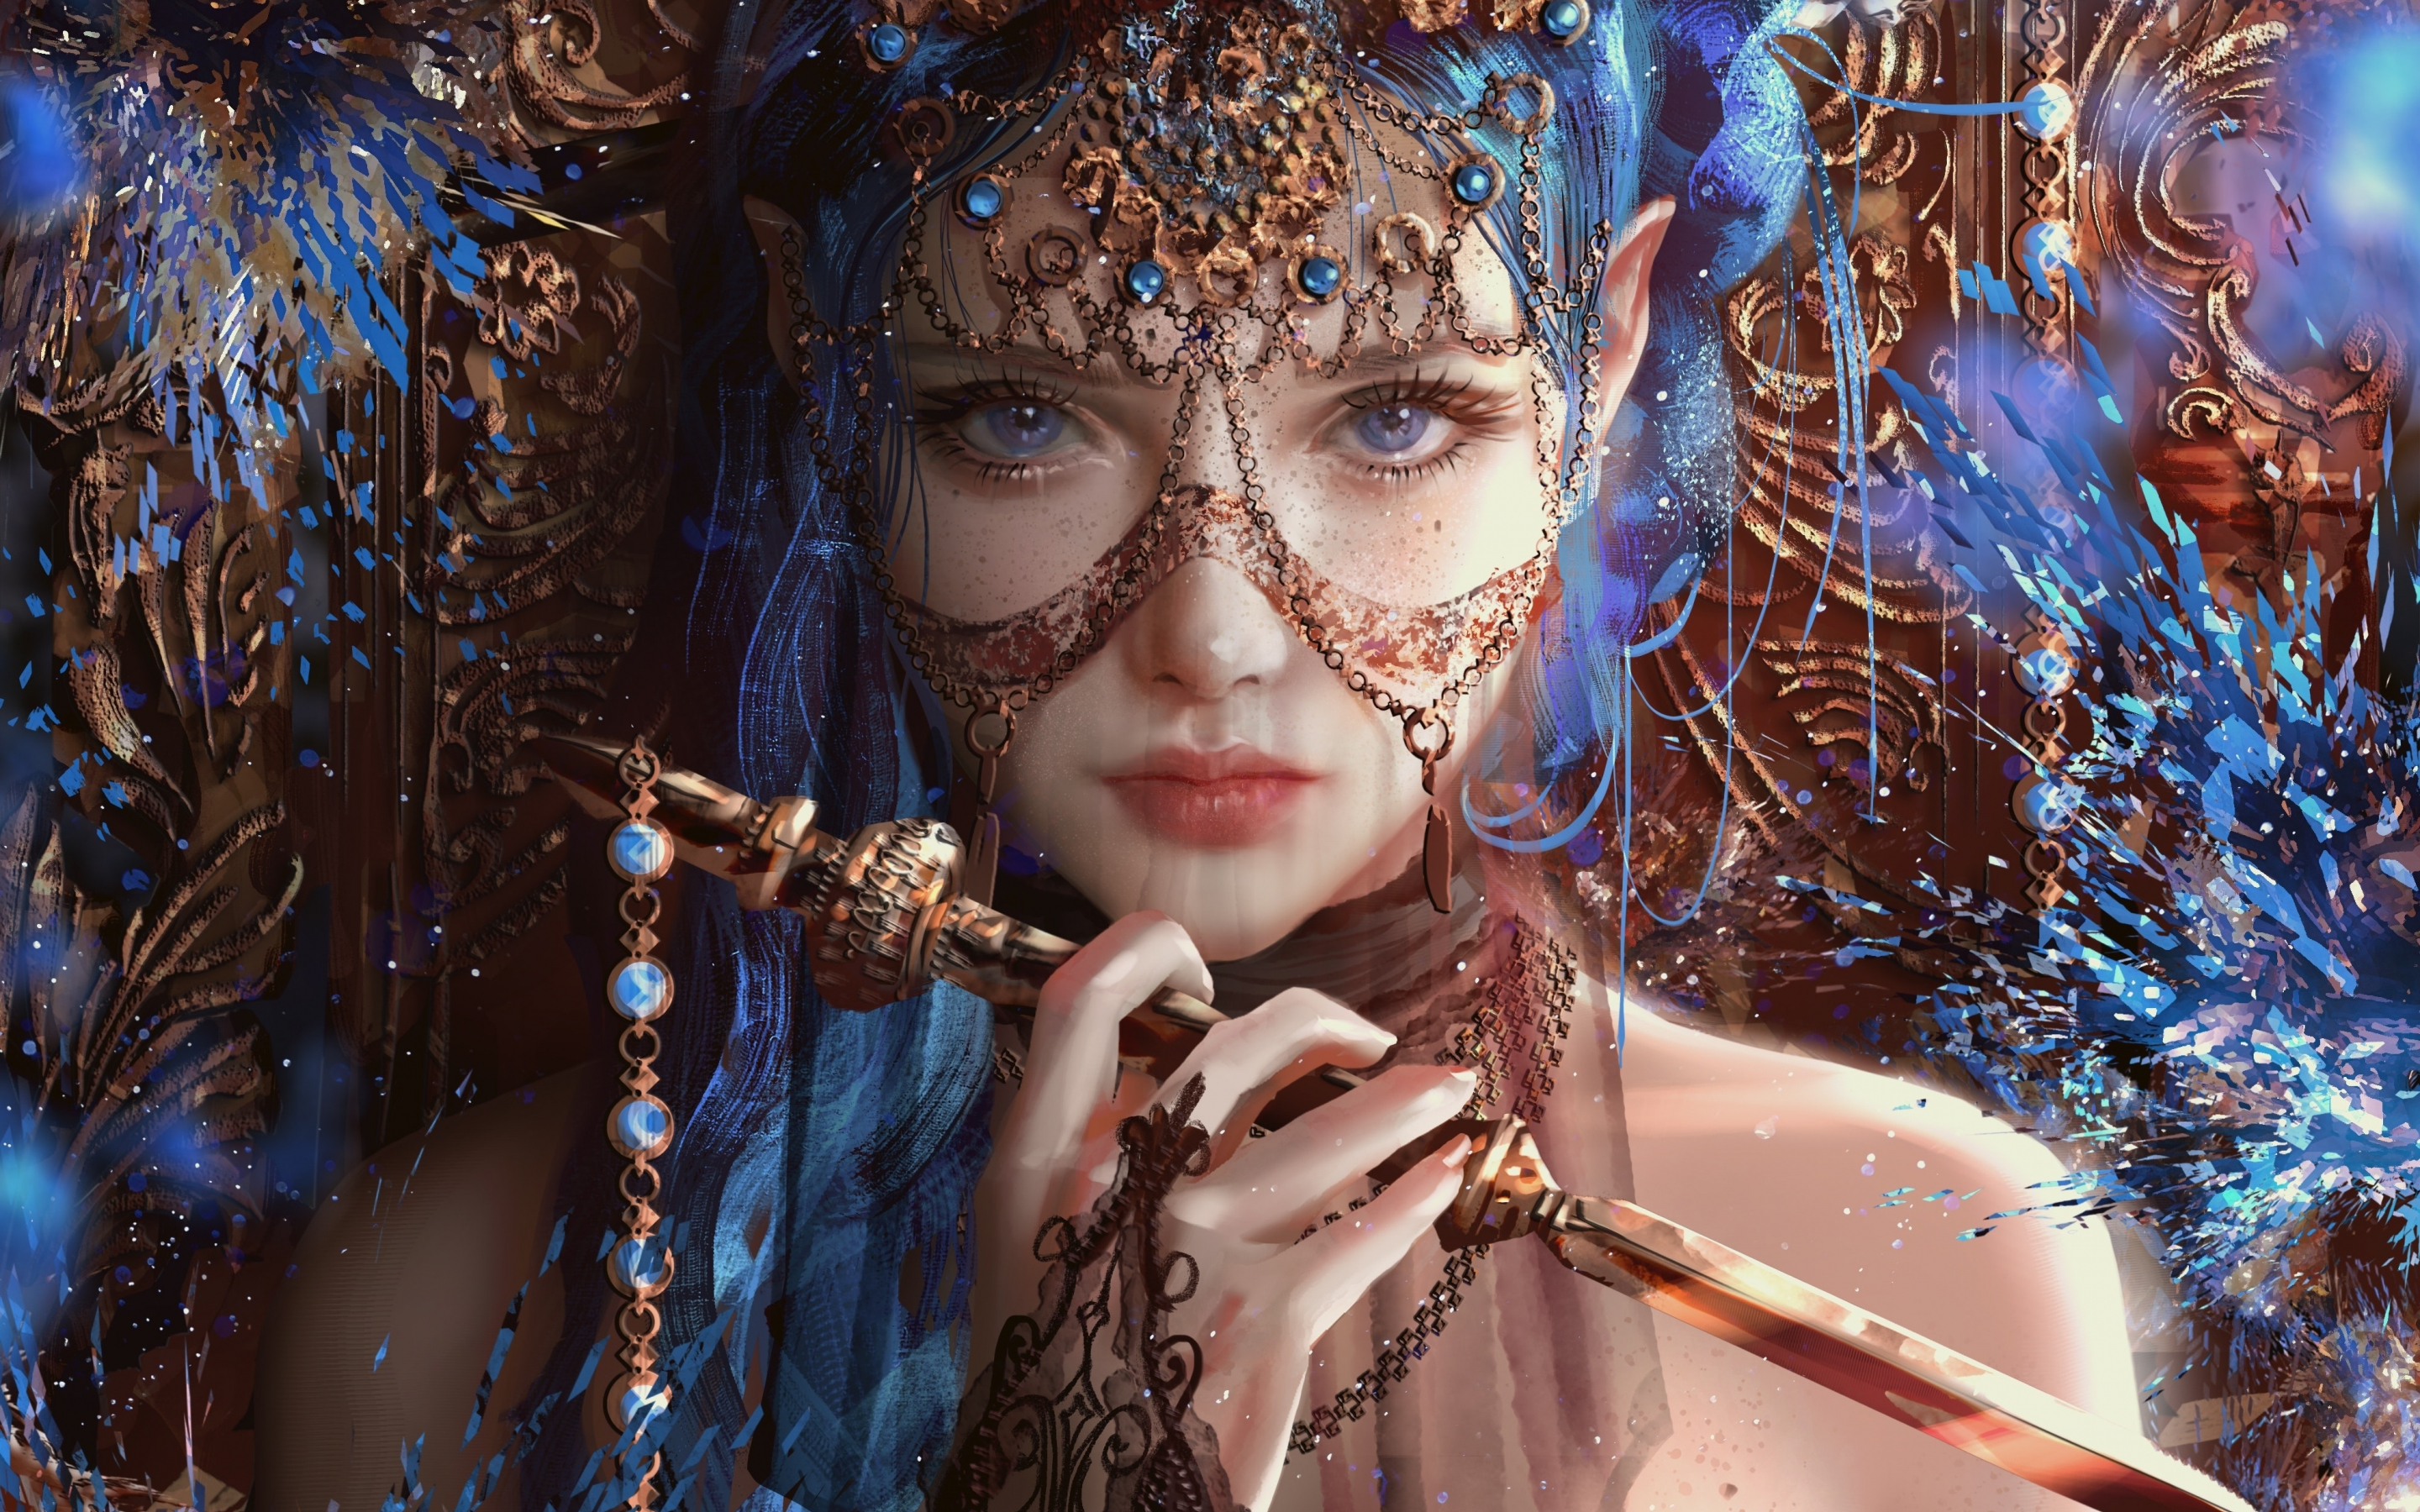 Woman in jewelry, fantasy, blue hair, art, 2880x1800 wallpaper